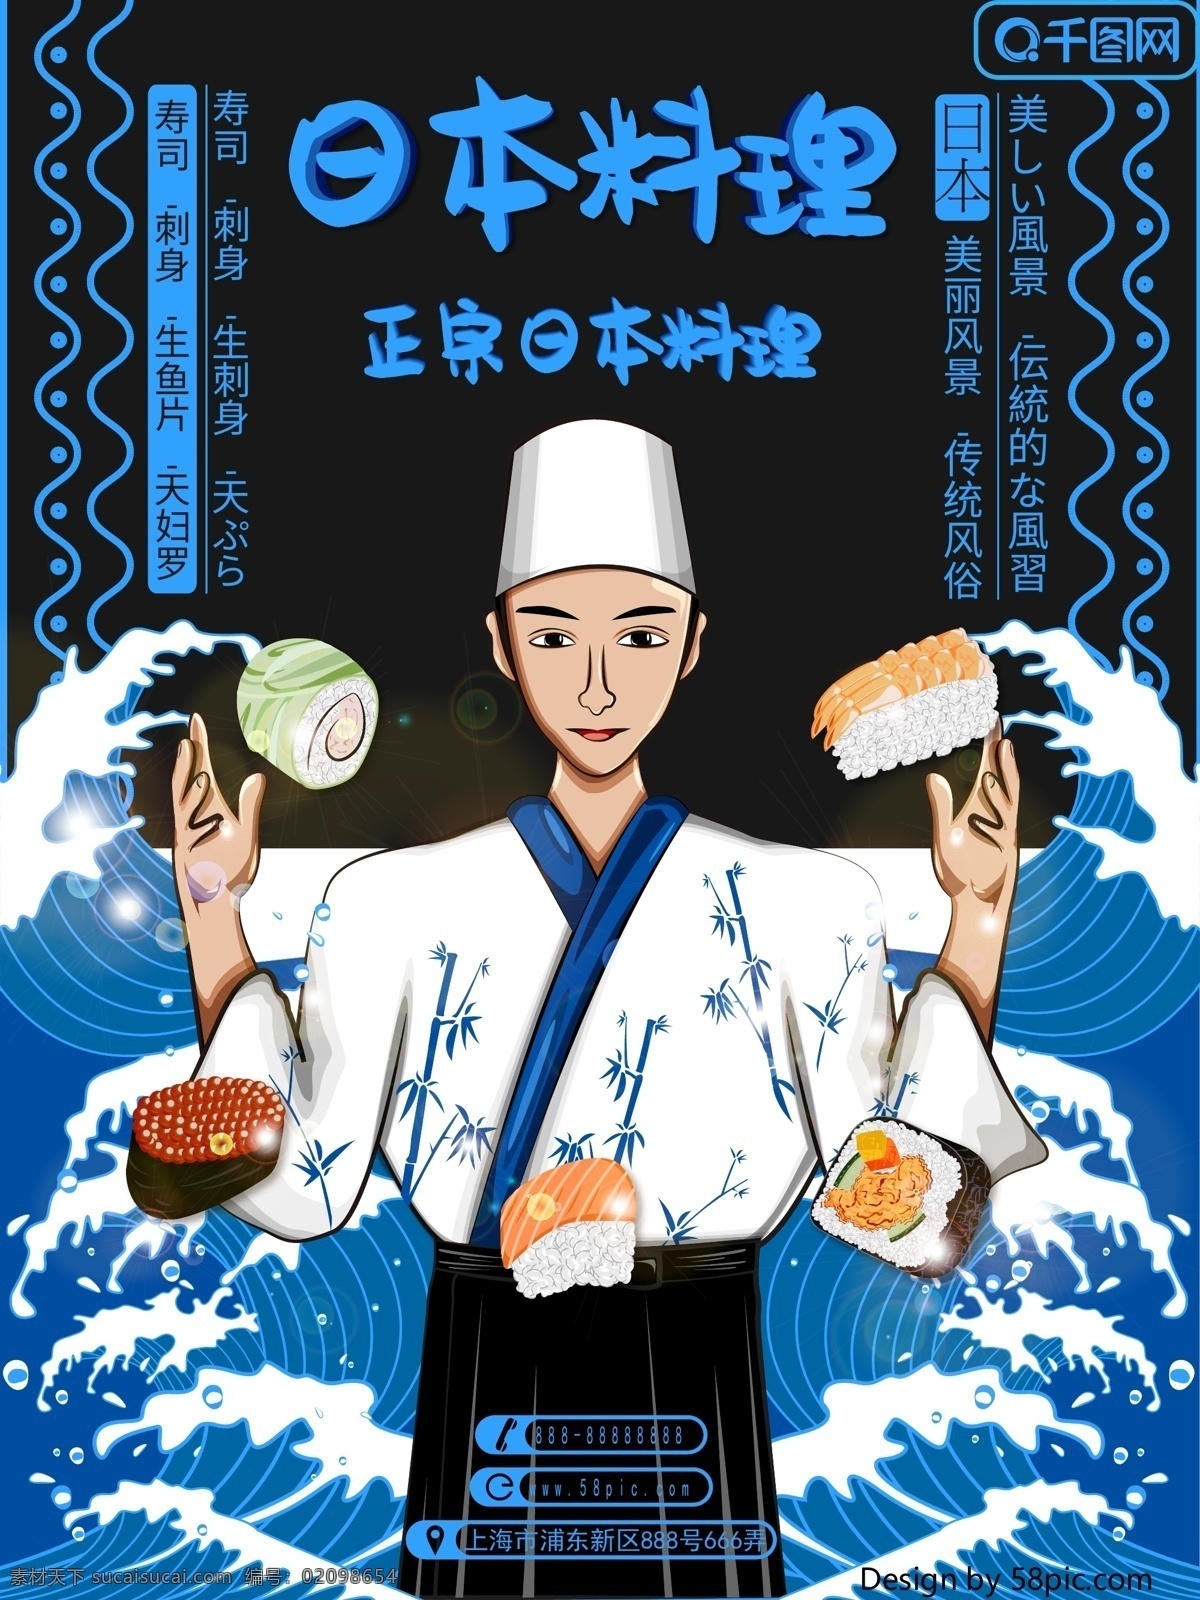 创意 手绘 插画 日式 日本 美食 模板 可商用 原创 寿司 浪花 日本料理 日本美食 料理 日本厨师 简约 日风 海报模板 创意海报